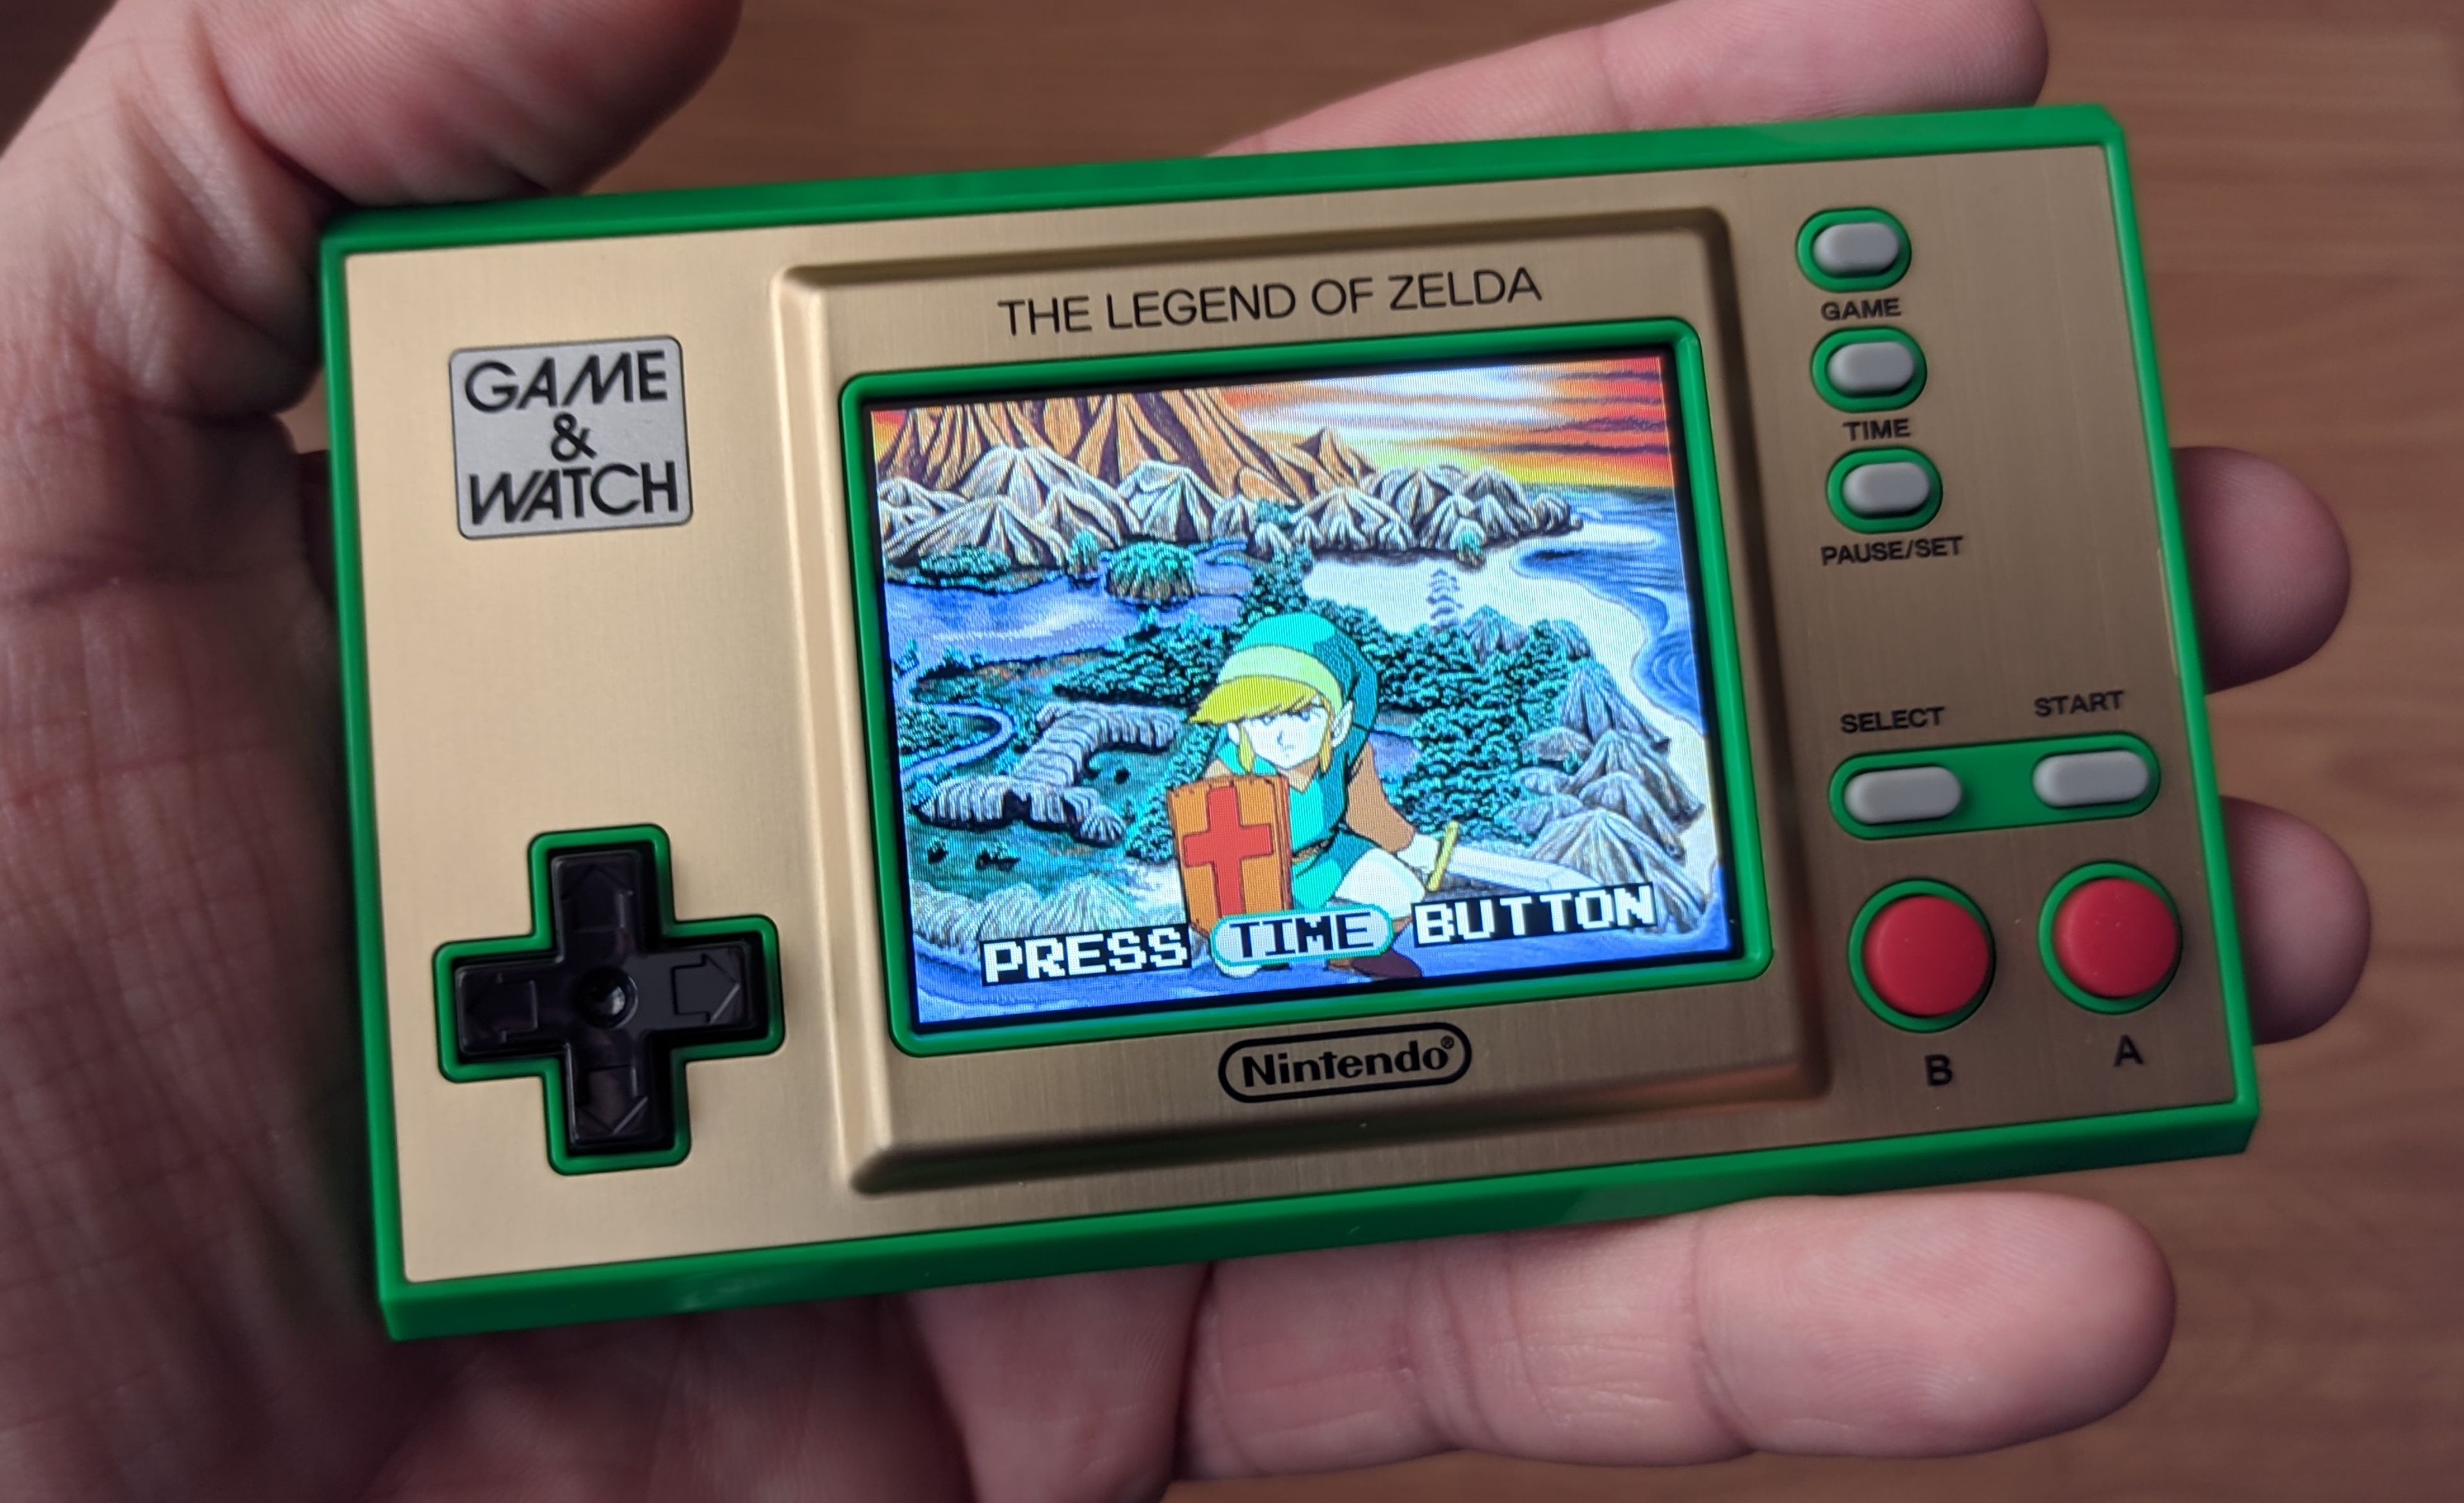 Nintendo Game & Watch : The Legend of Zelda